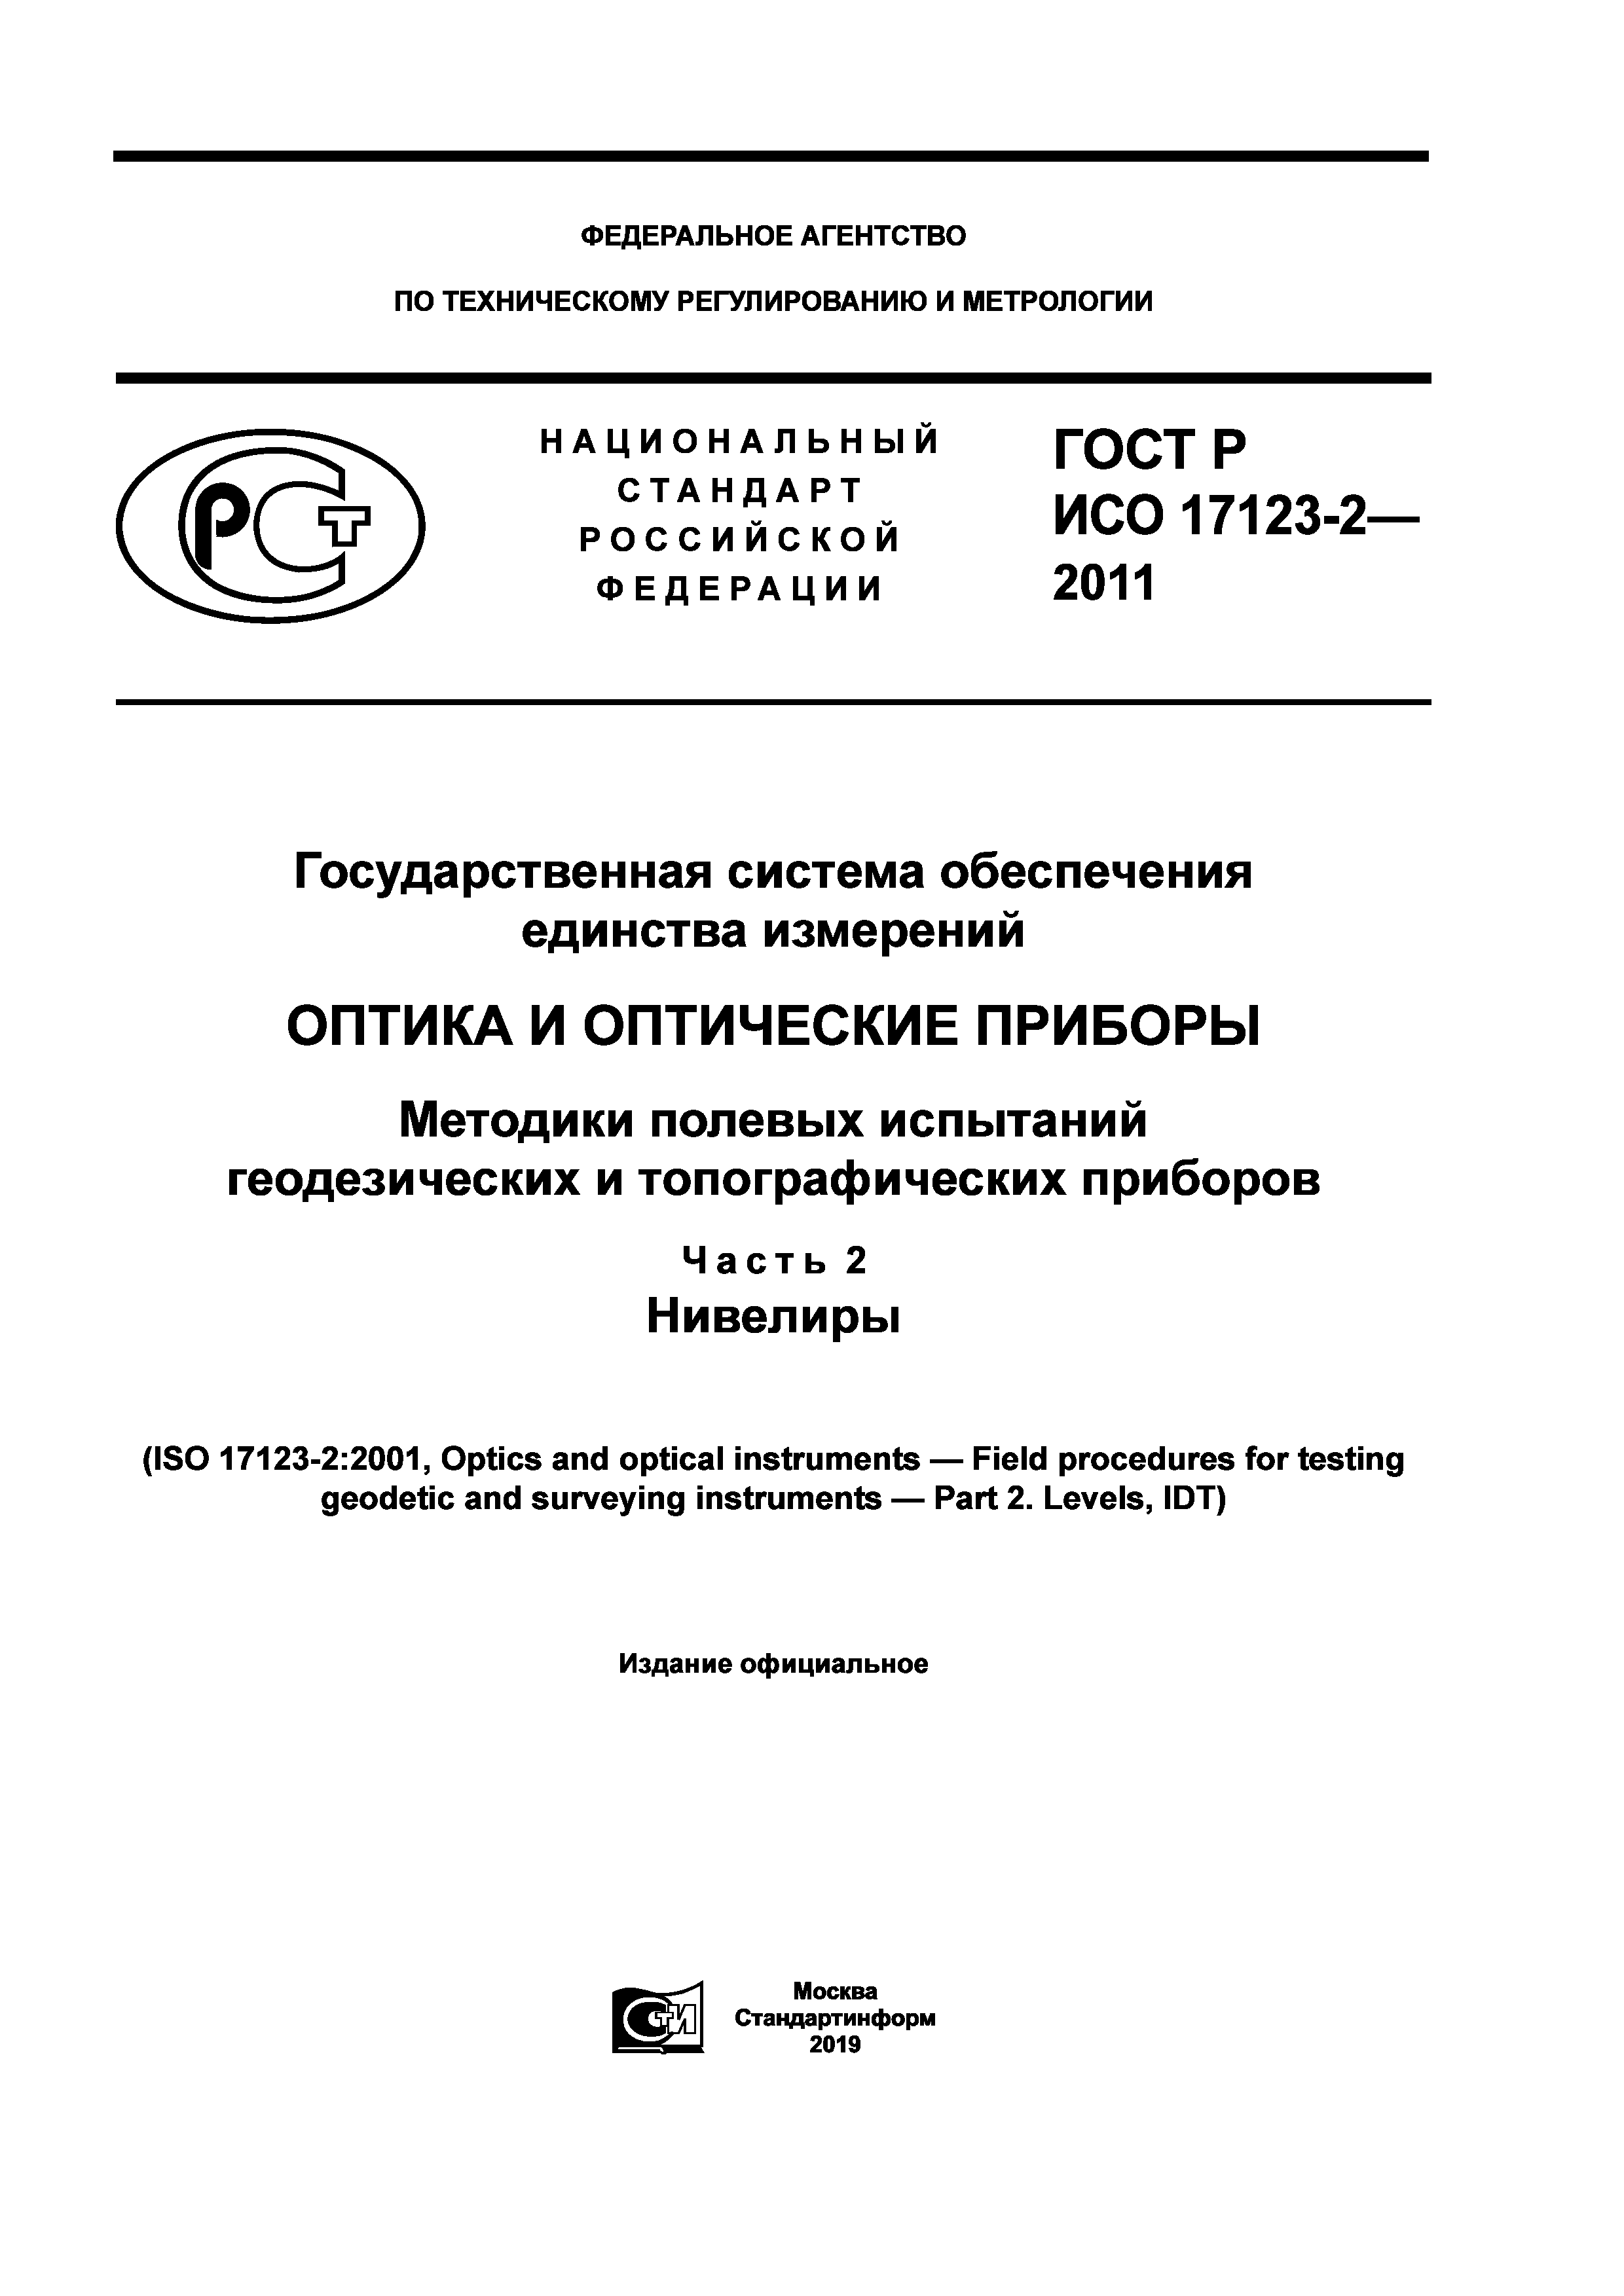 ГОСТ Р ИСО 17123-2-2011